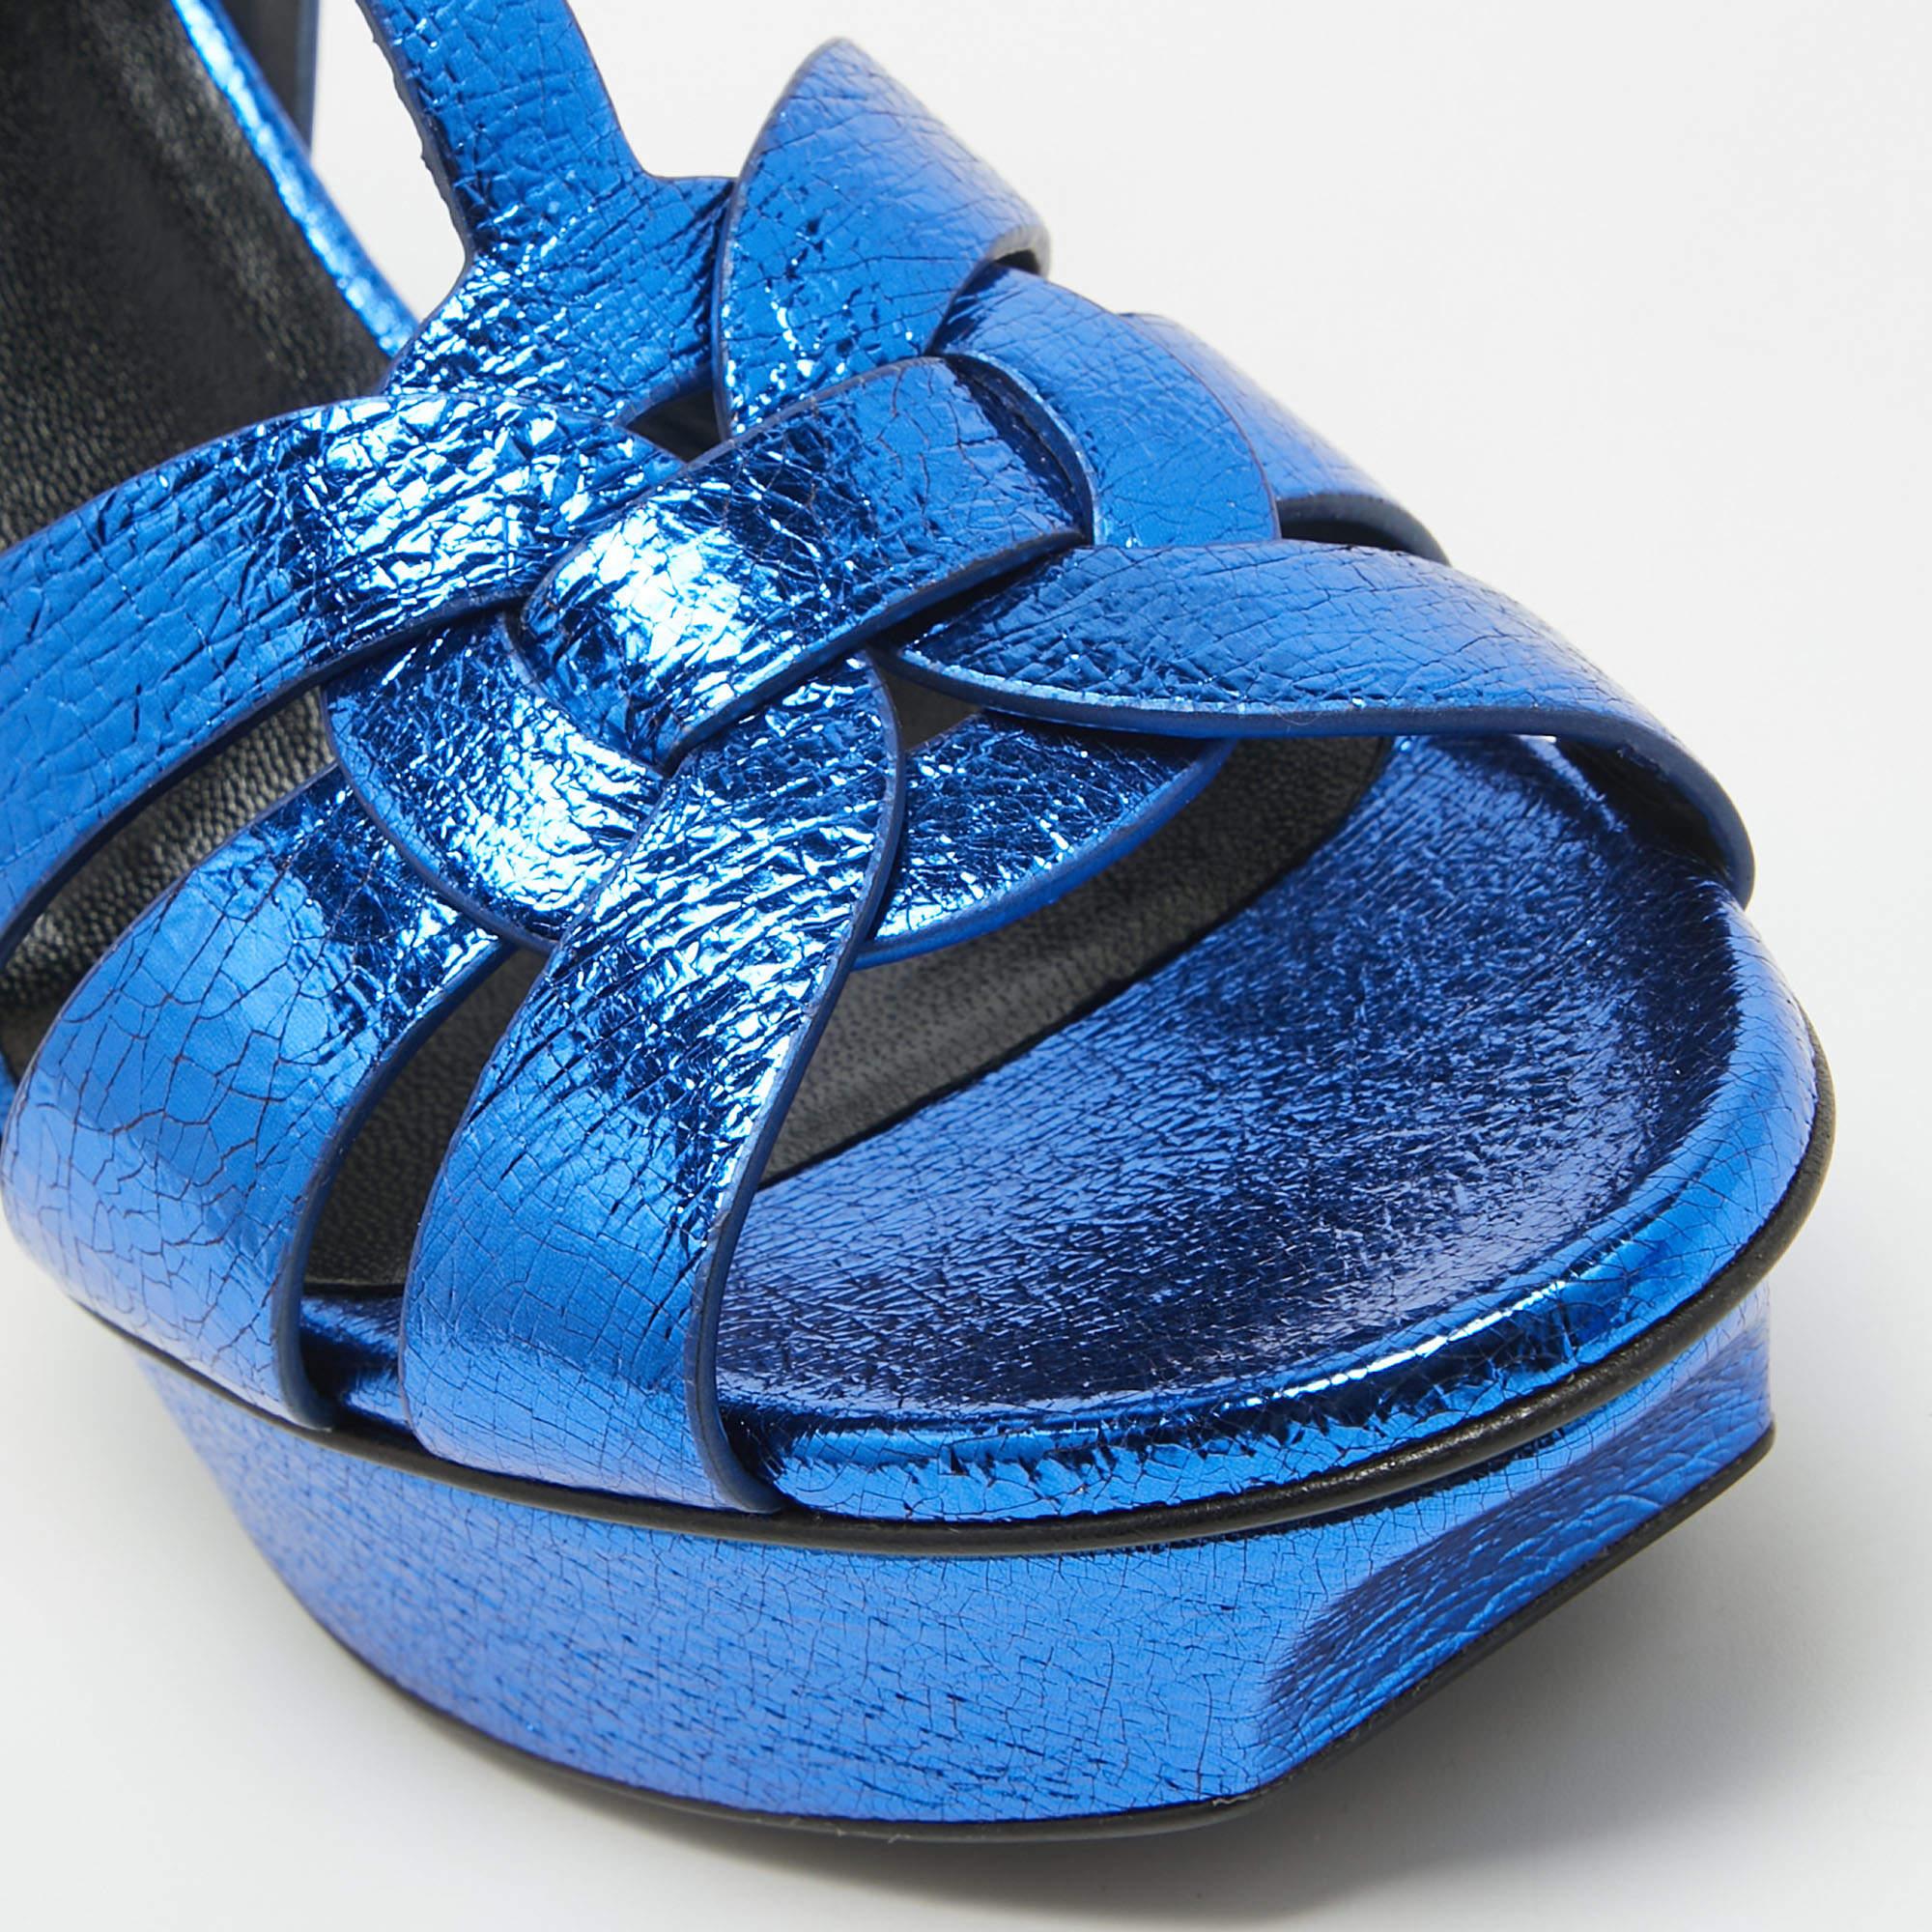 Women's Saint Laurent Navy Blue Foil Leather Tribute Platform Ankle Strap Sandals Size 3